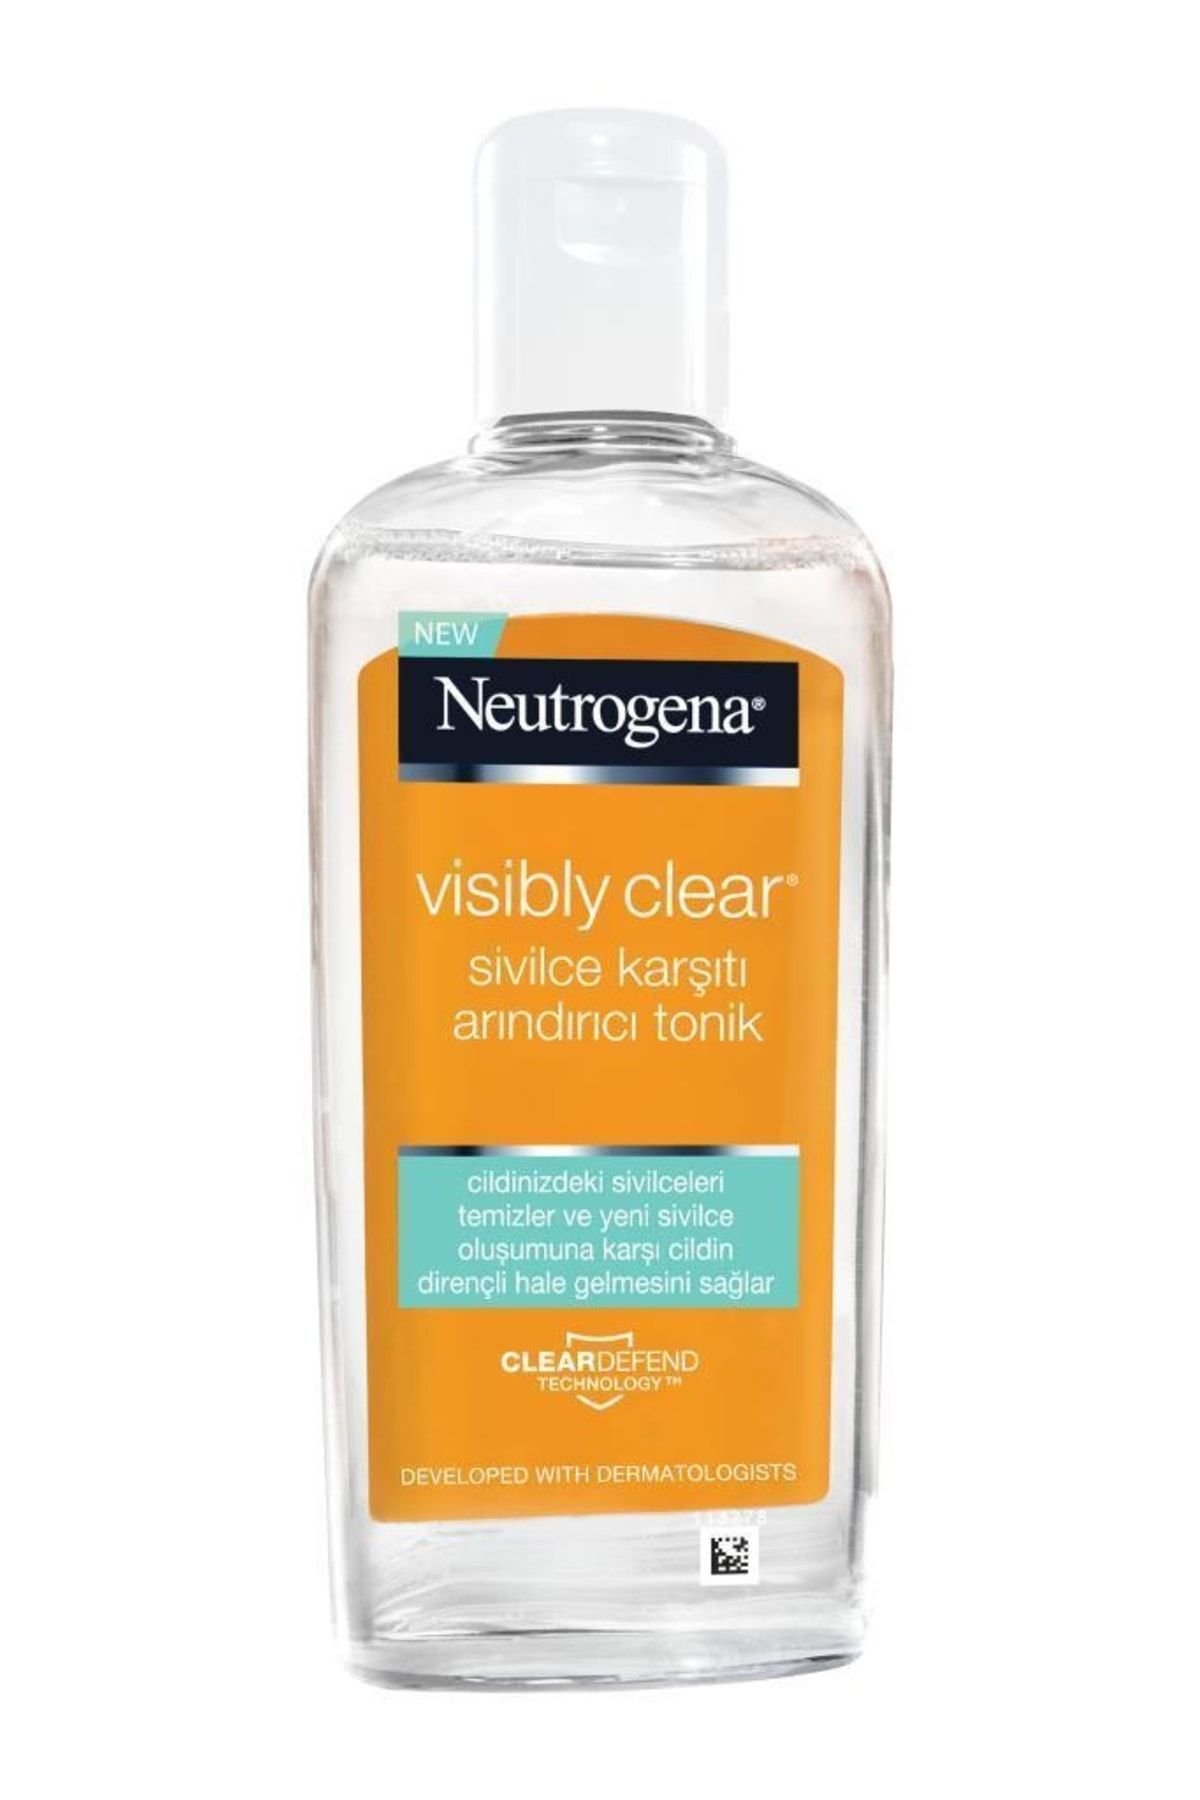 Neutrogena Sivilce Karşıtı Arındırıcı Tonik 200 ml